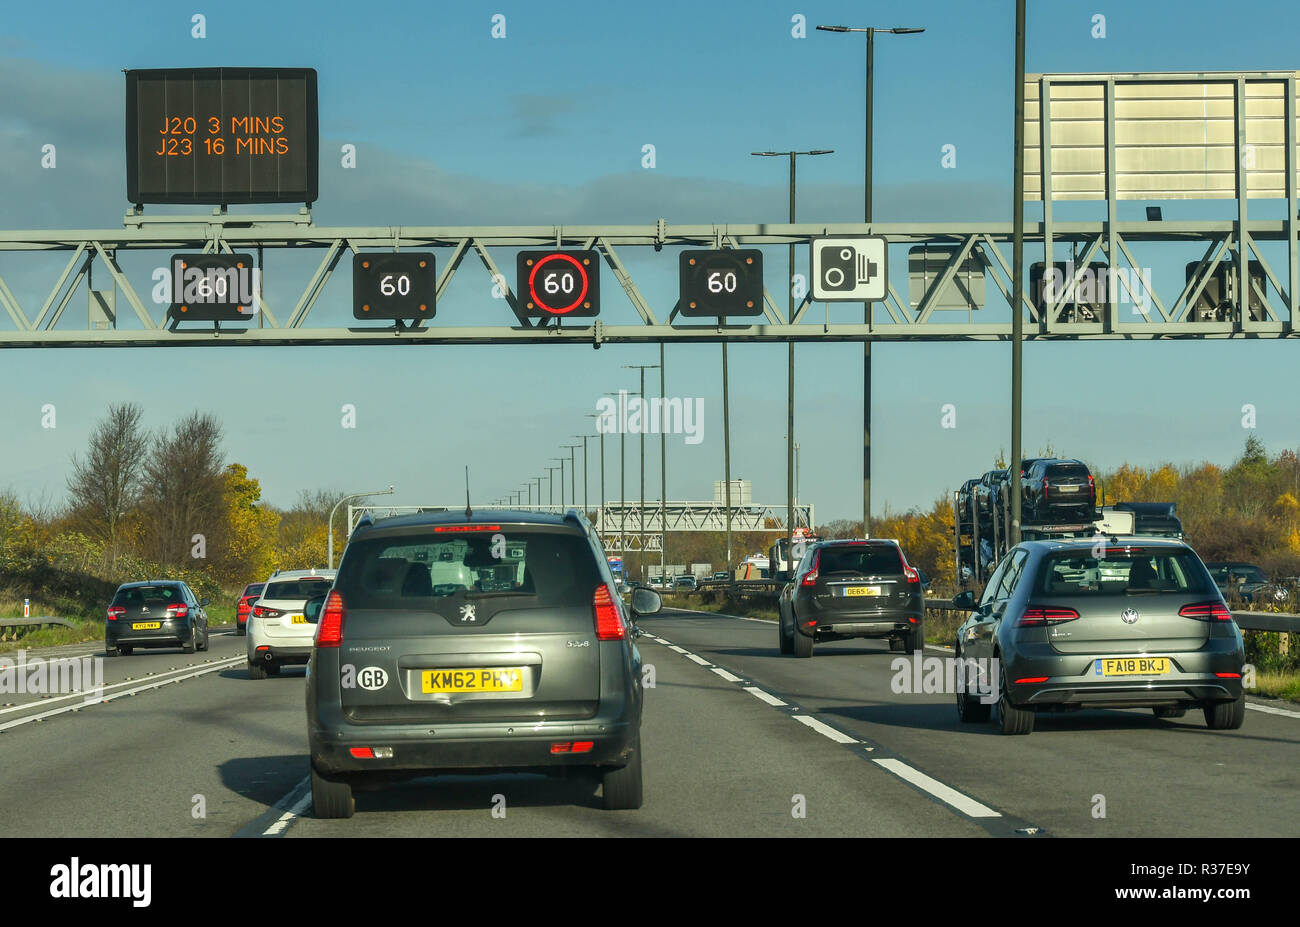 BRISTOL, England - NOVEMBER 2018: Verkehr, der unter einem Portal auf der Autobahn M4 in der Nähe von Bristol. Die elektronischen Zeichen zeigen die Einstellung der Stockfoto